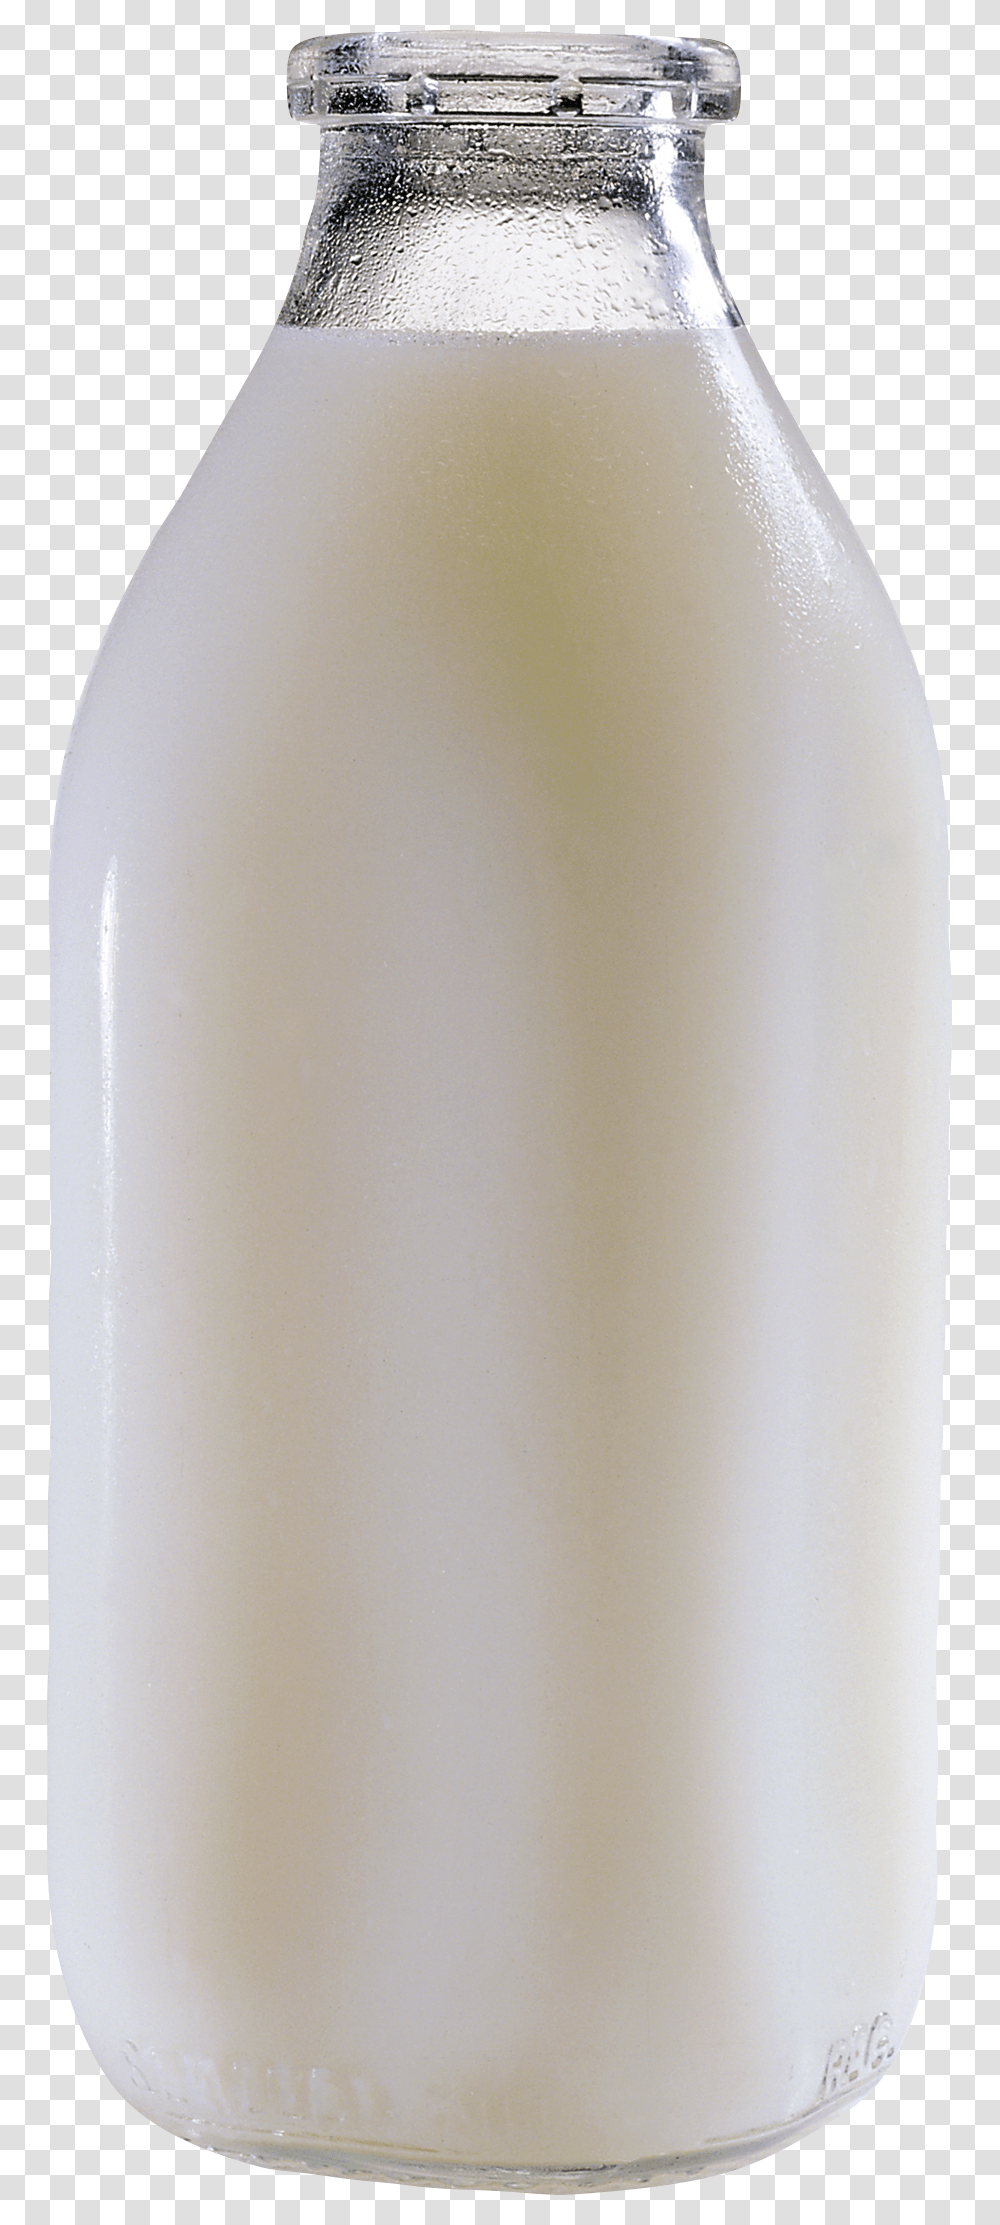 Bottle Of Milk Background, Beverage, Drink, Dairy, Shaker Transparent Png